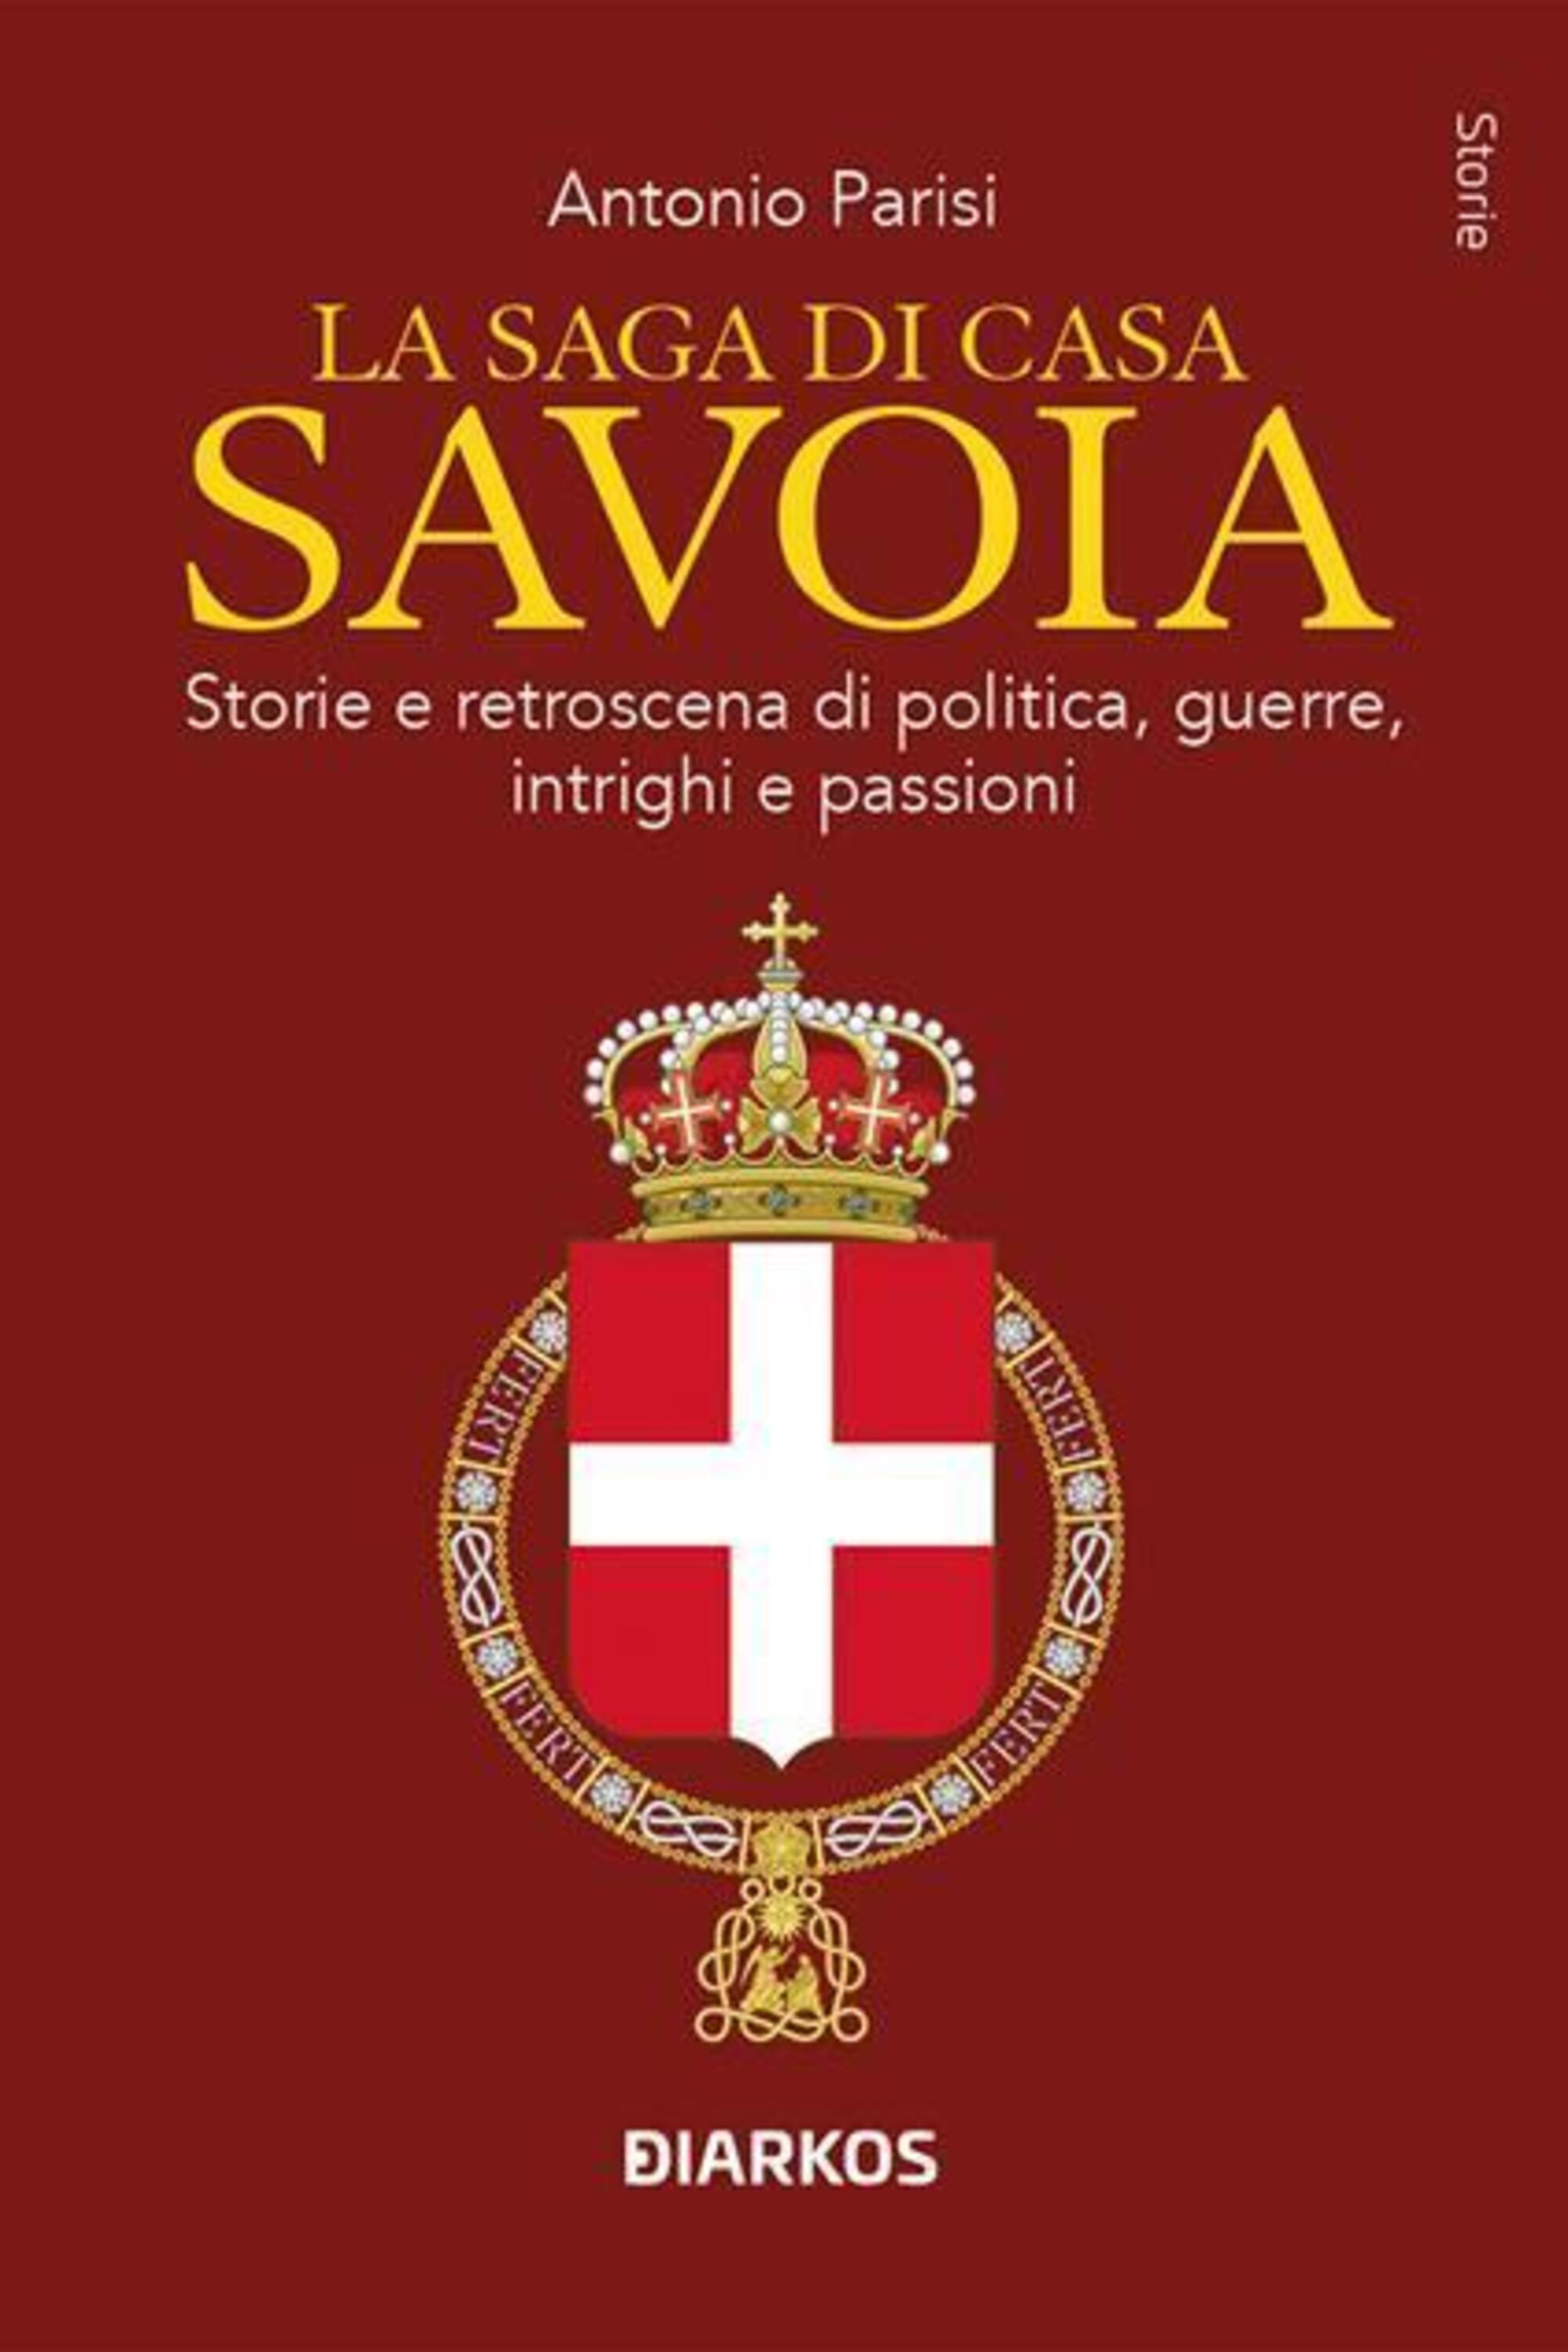 La saga di casa Savoia, Antonio Parisi, ed. Diarkos